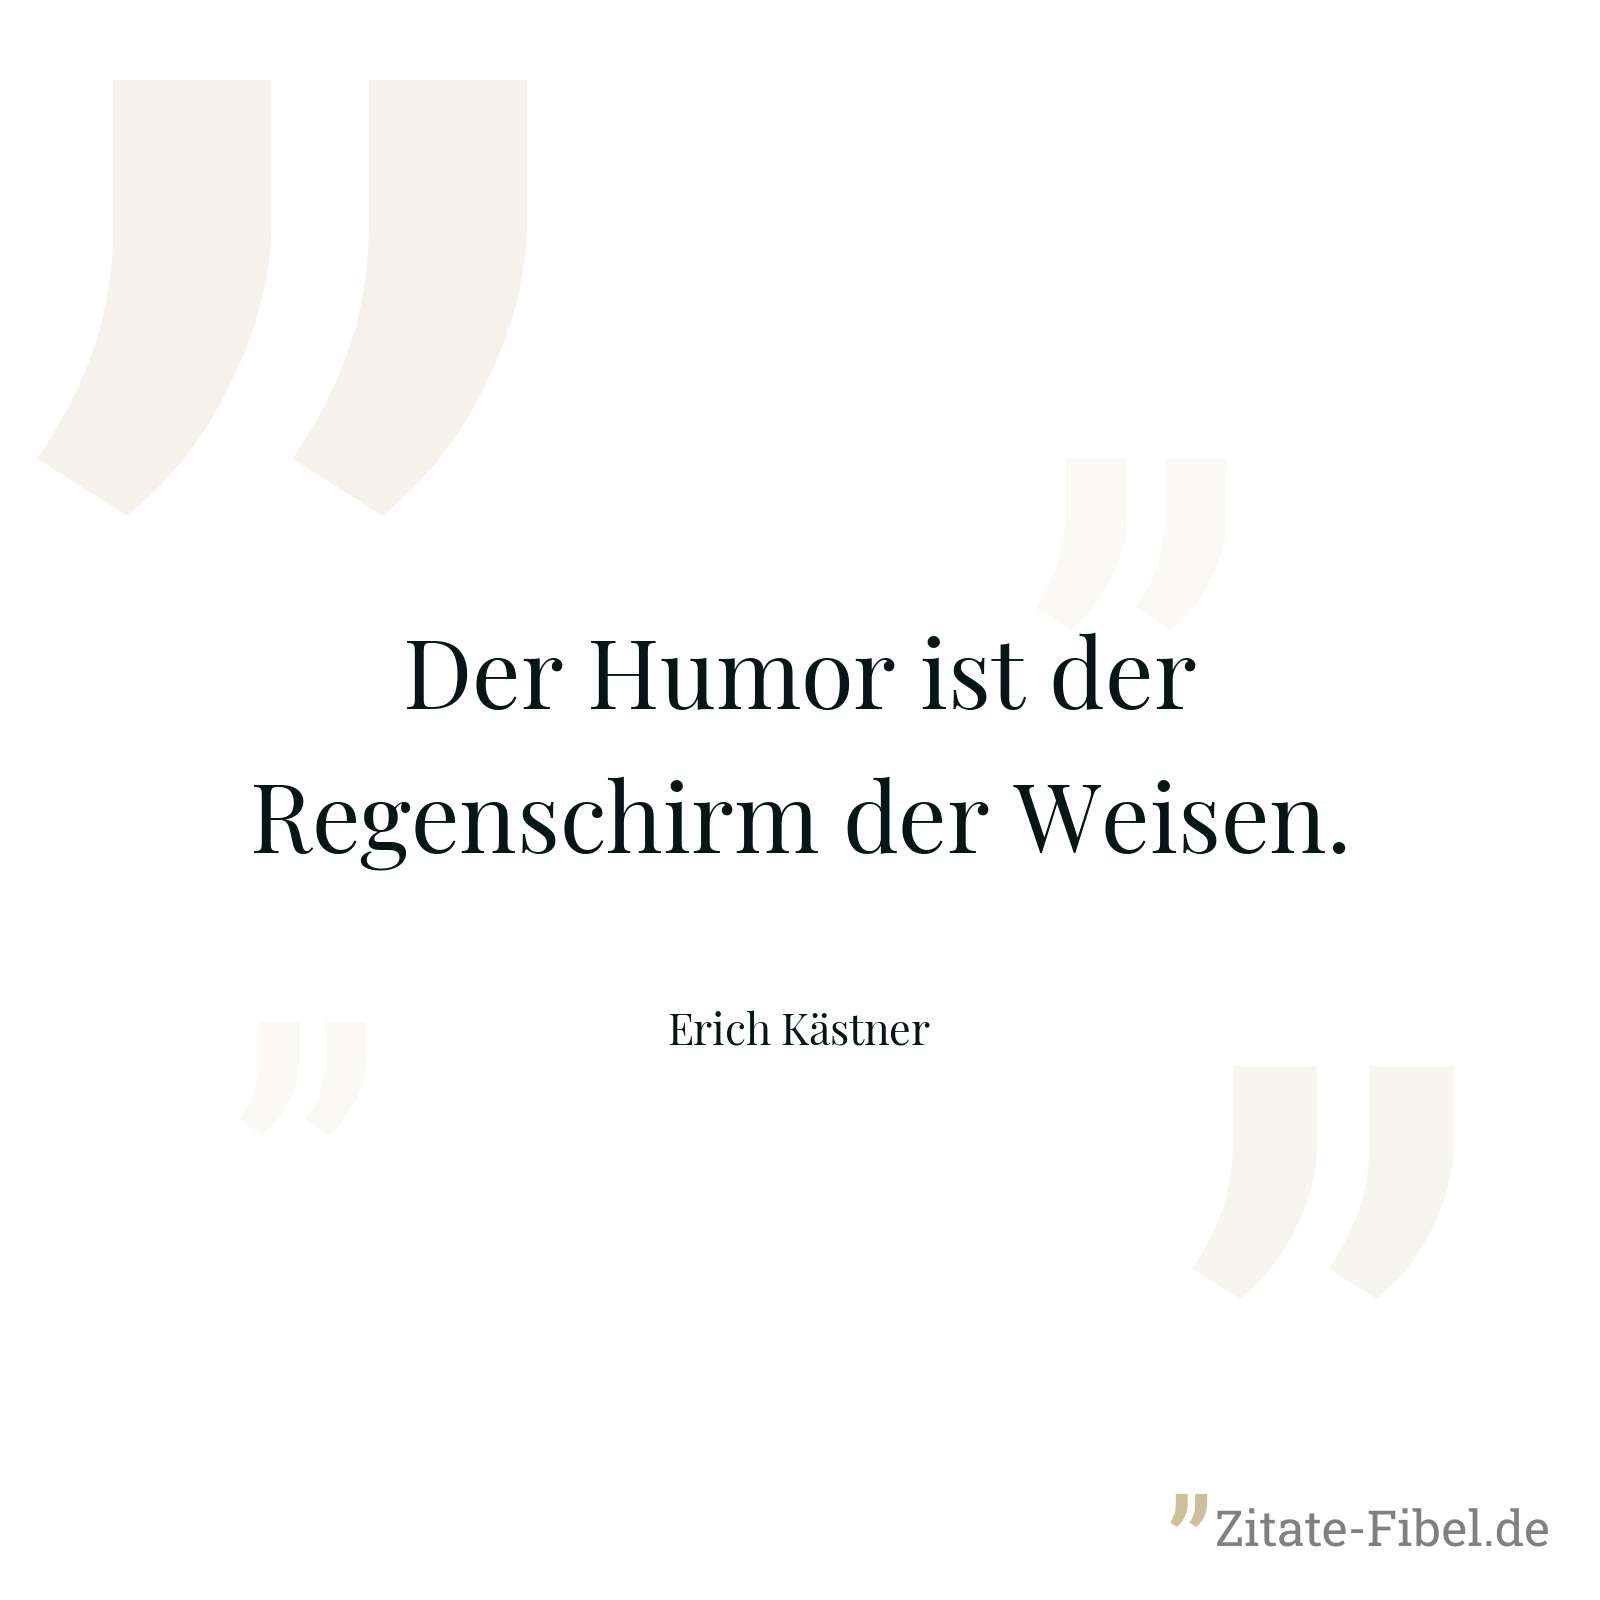 Der Humor ist der Regenschirm der Weisen. - Erich Kästner